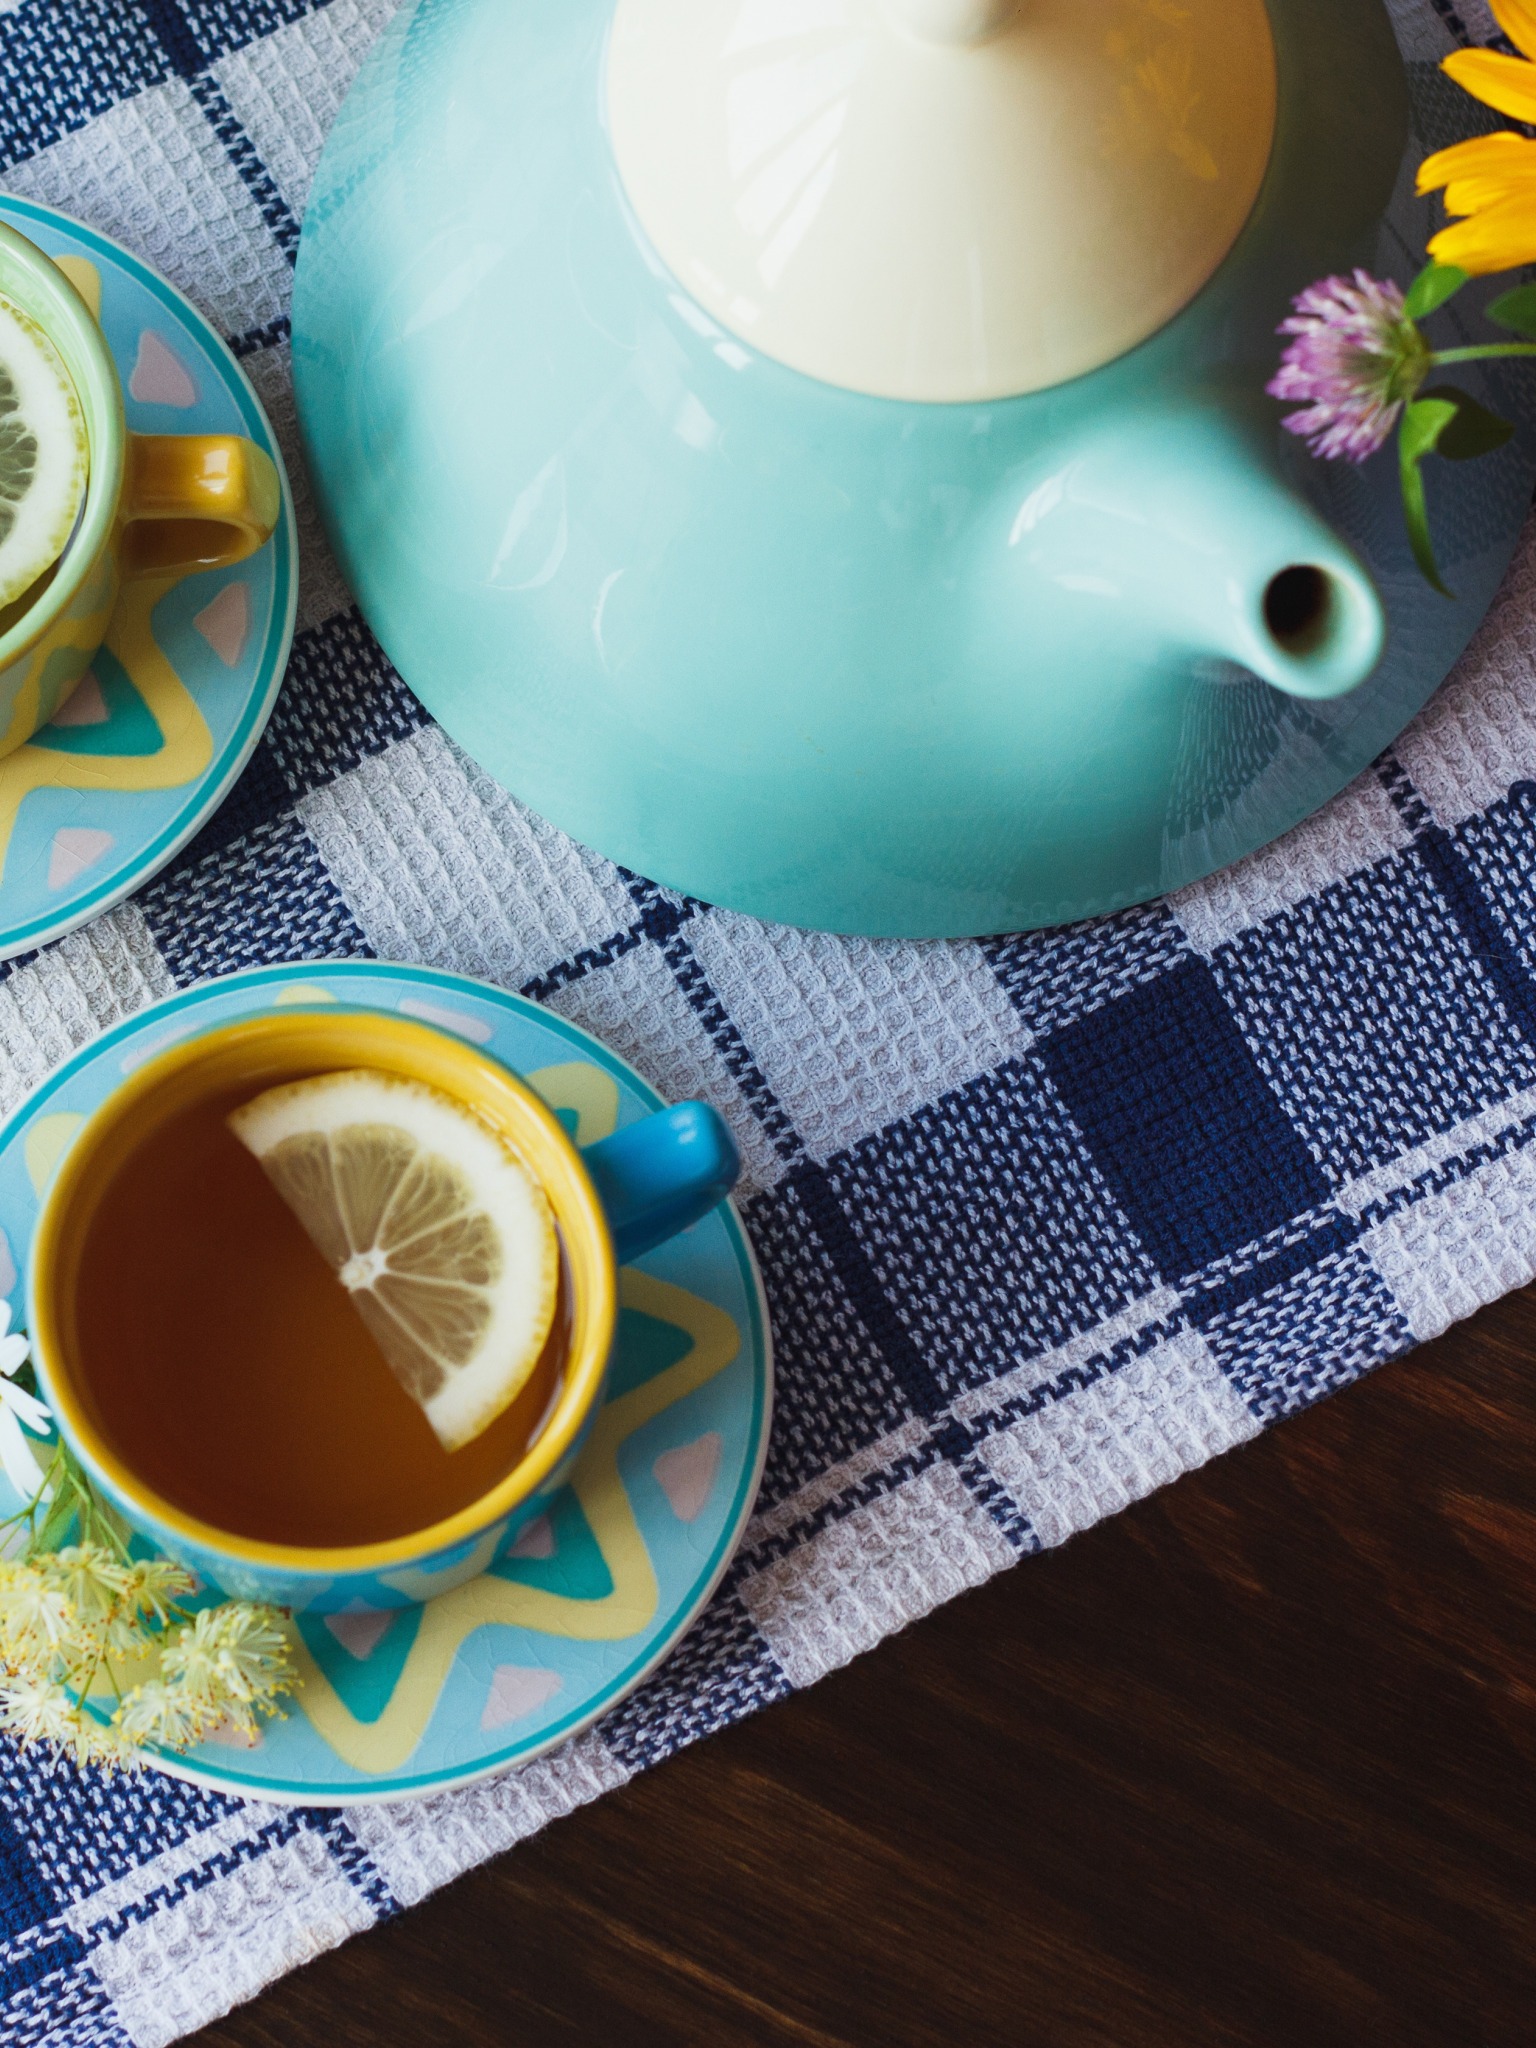 Чай с лимоном каждый день. Лимон к чаю. Вышивка лимон и чашка чая. Ленинградские лимонные к чаю. Зеленый чай, лимон, ежевика, чашка.